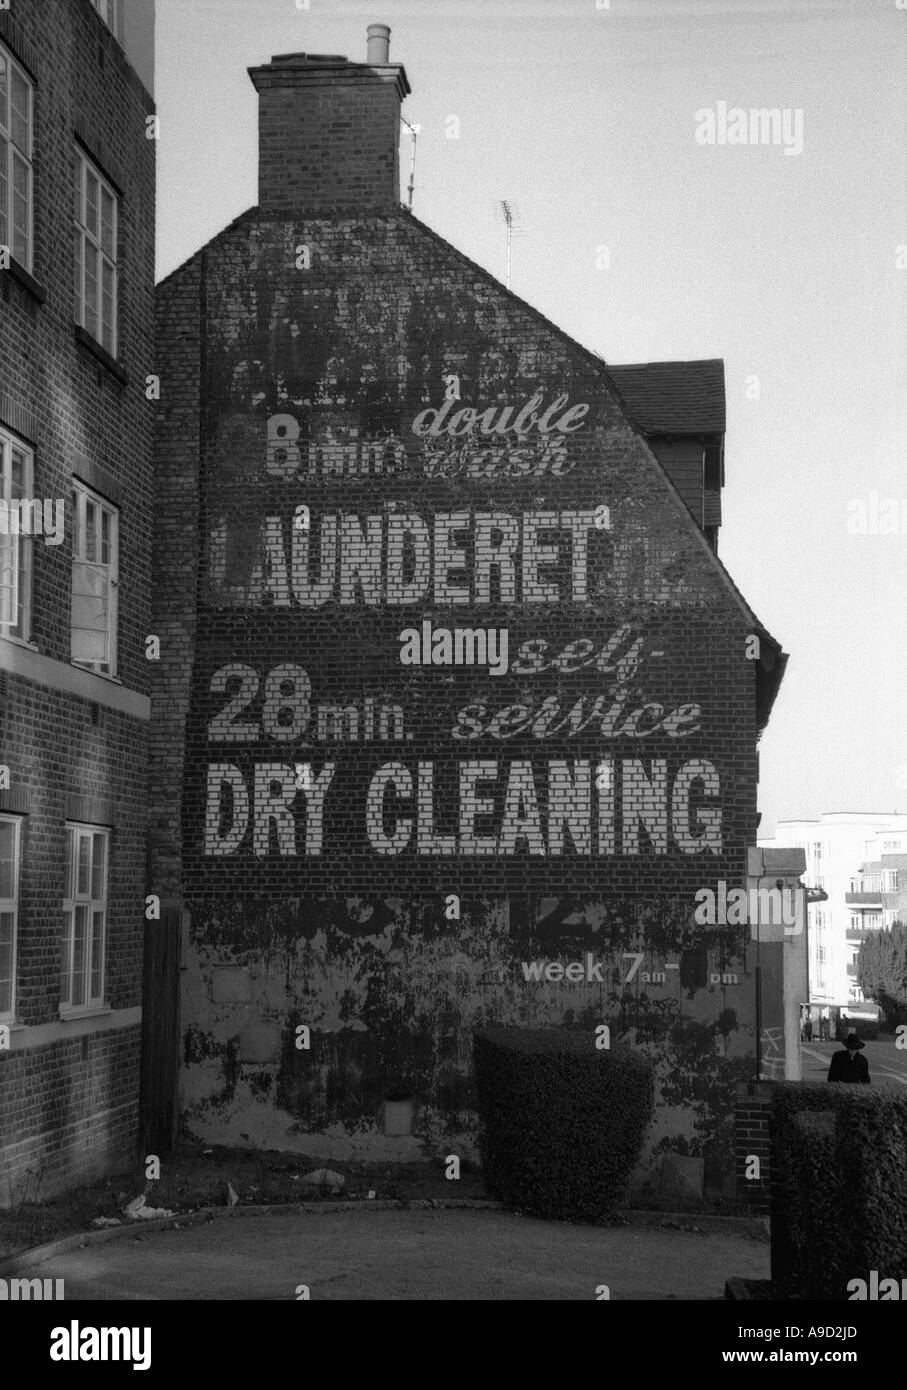 Vue de l'ancienne Laverie Blanchisserie Nettoyage à sec boutique dans High Street Golders Green London England Royaume-Uni Europe Banque D'Images